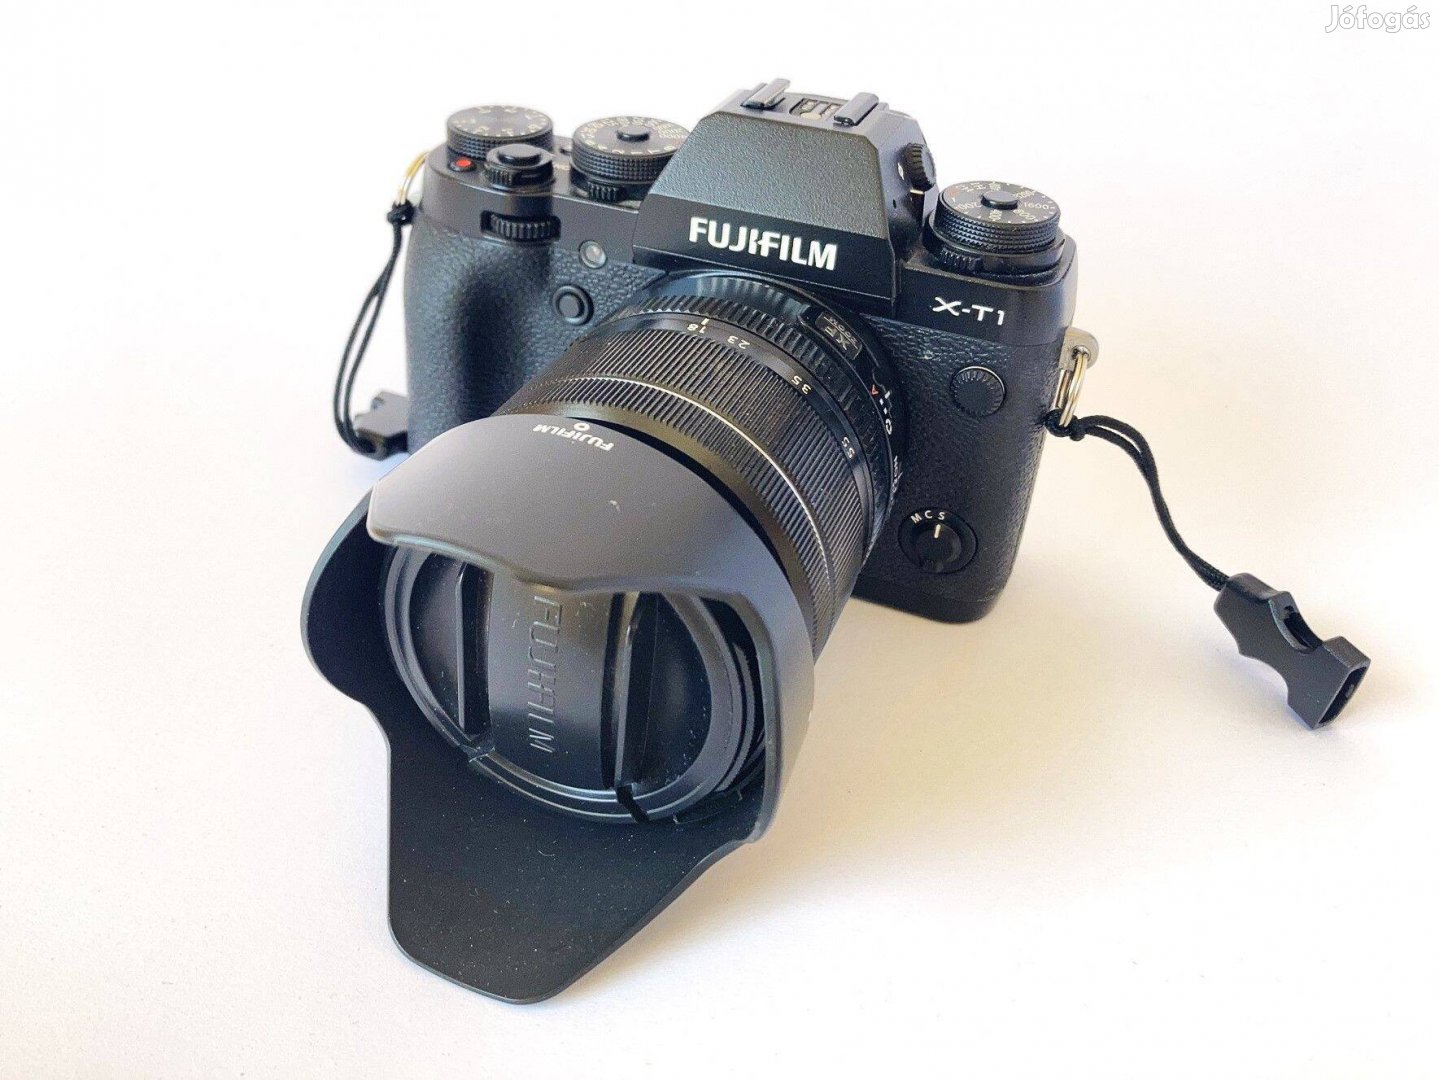 Fujifilm X-T1 (Fuji XT1) MILC digitális fényképezőgép / kamera